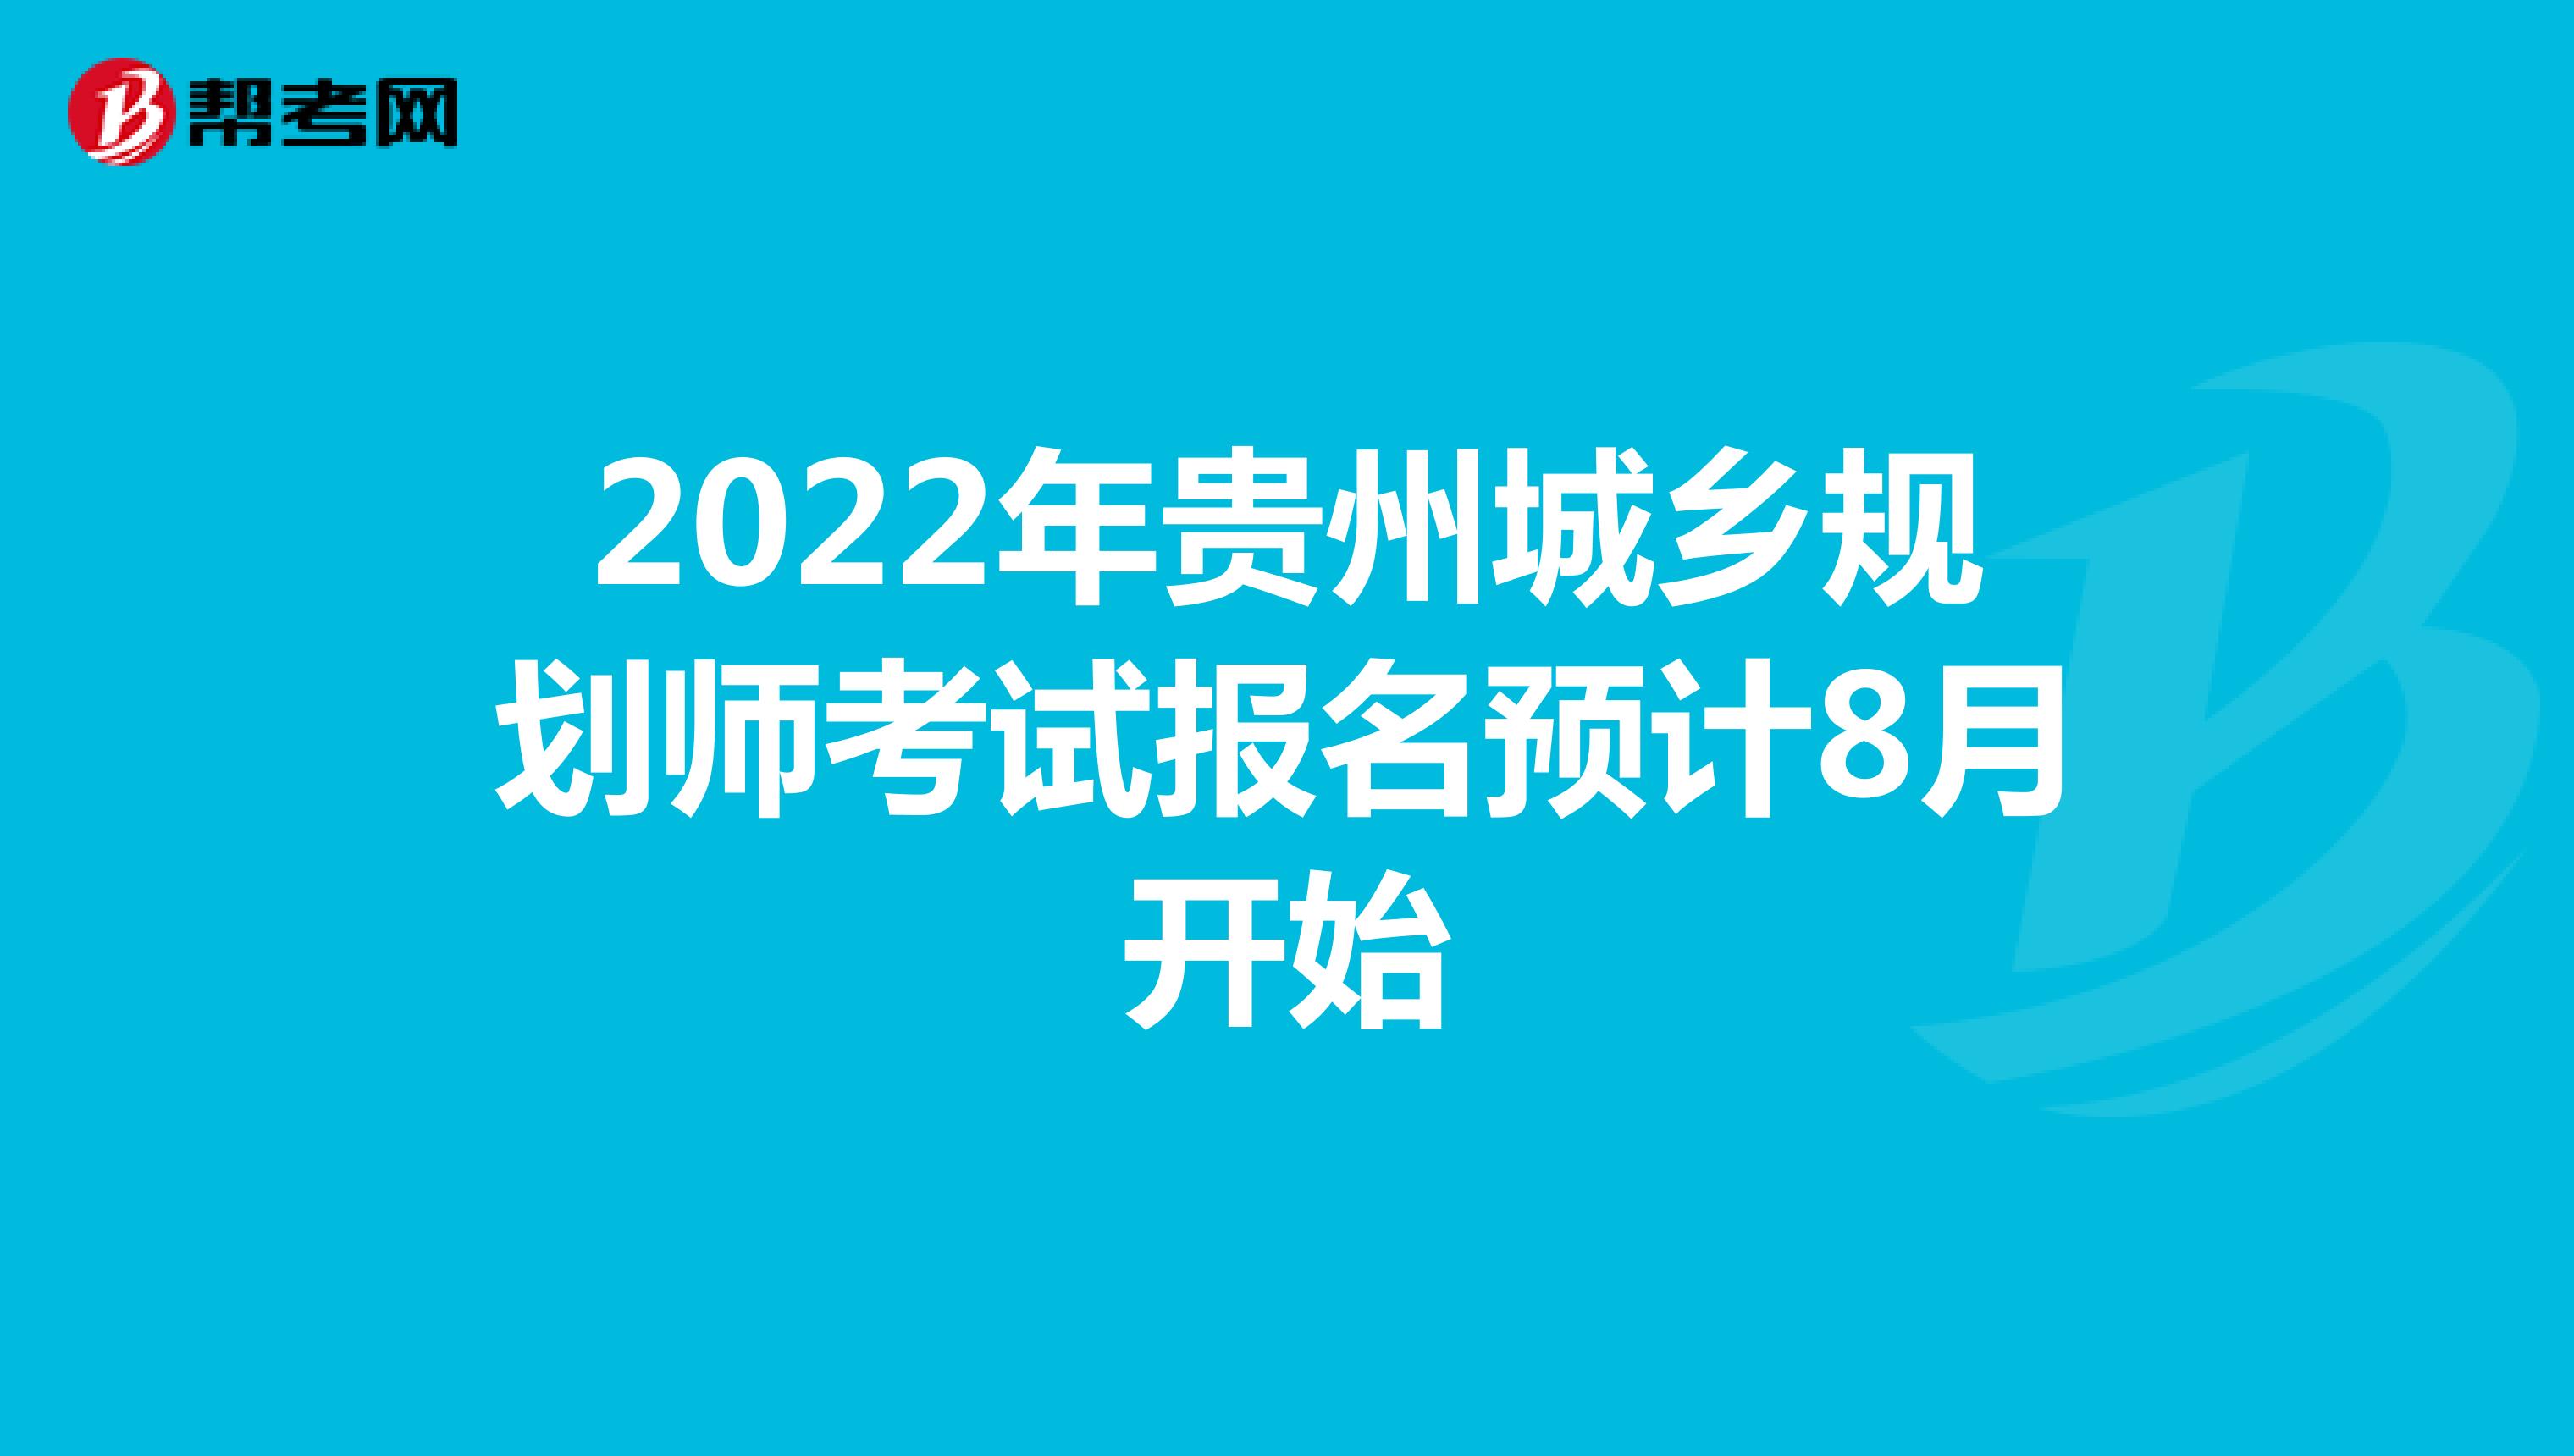 2022年贵州城乡规划师考试报名预计8月开始